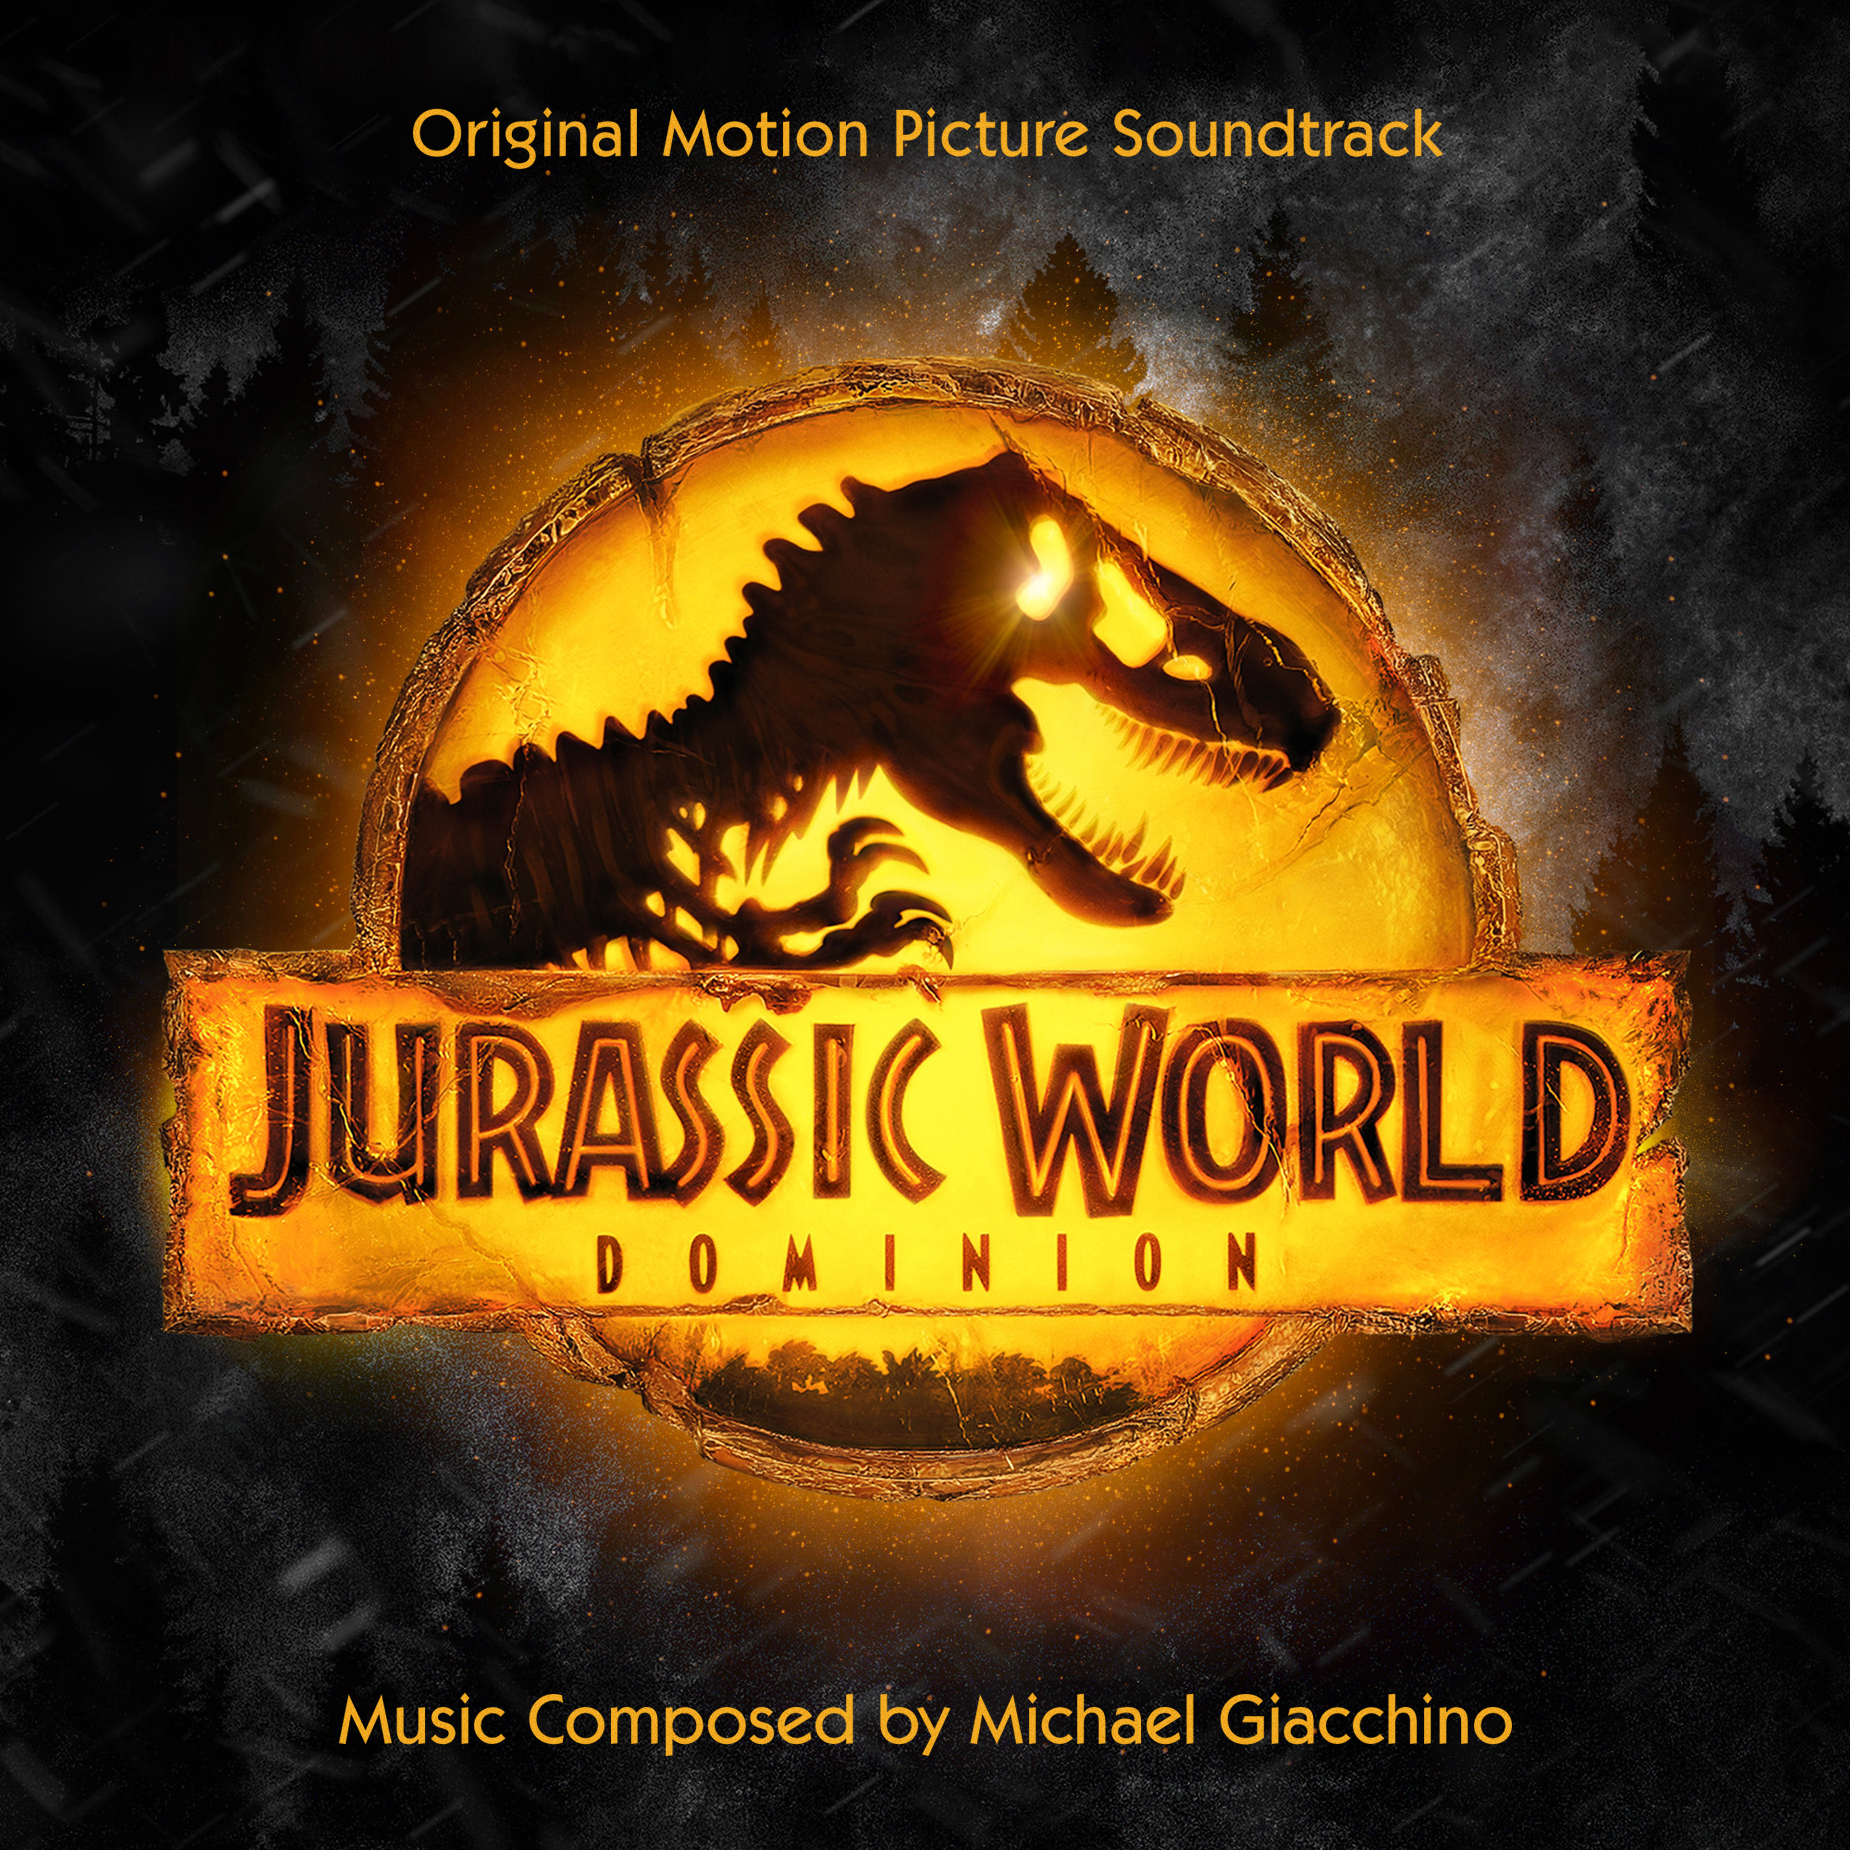 Michael Giacchino Jurassic World Dominion (Original Soundtrack) cover artwork